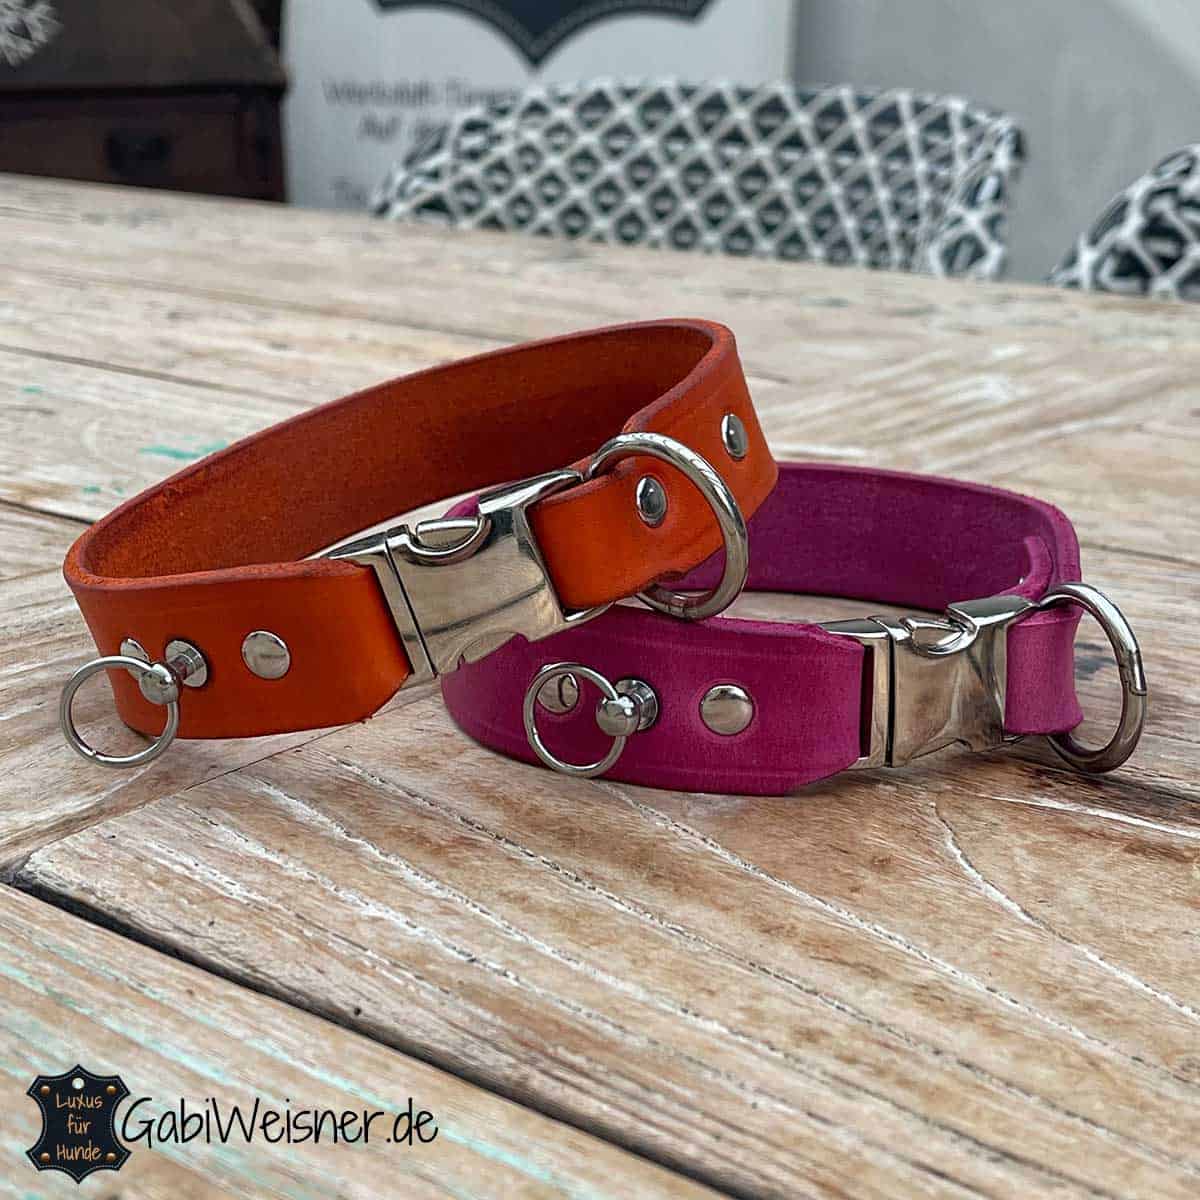 Hundehalsband mit Klick, Leder 3 cm breit, für mittelgroße Hunde. Leder in Pink und Orange.